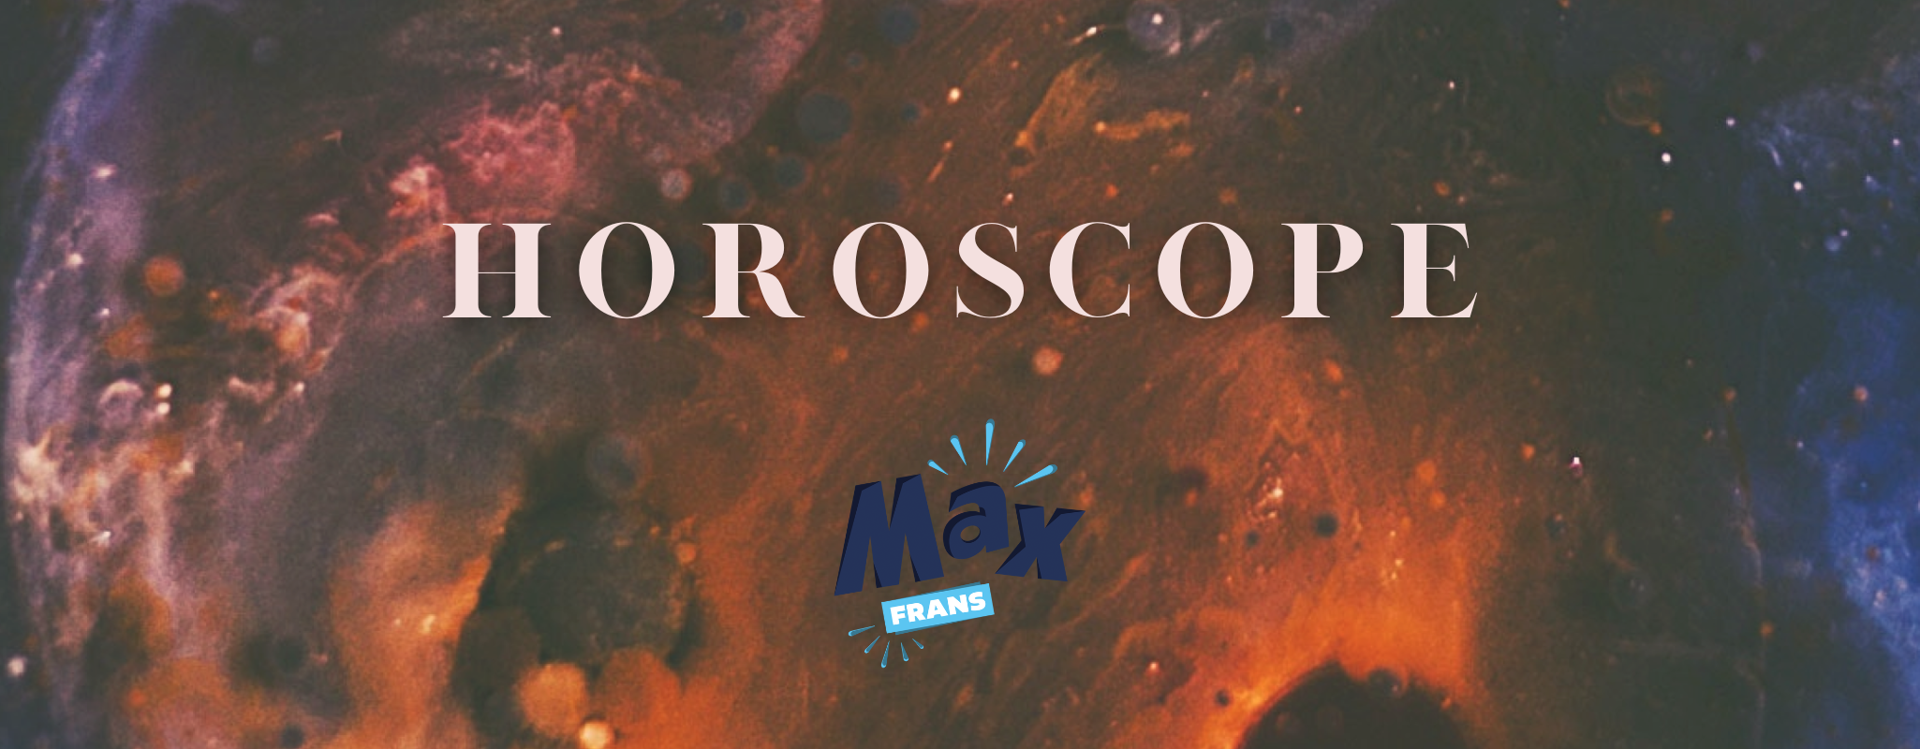 Horoscoop | Max-Frans | die Keure